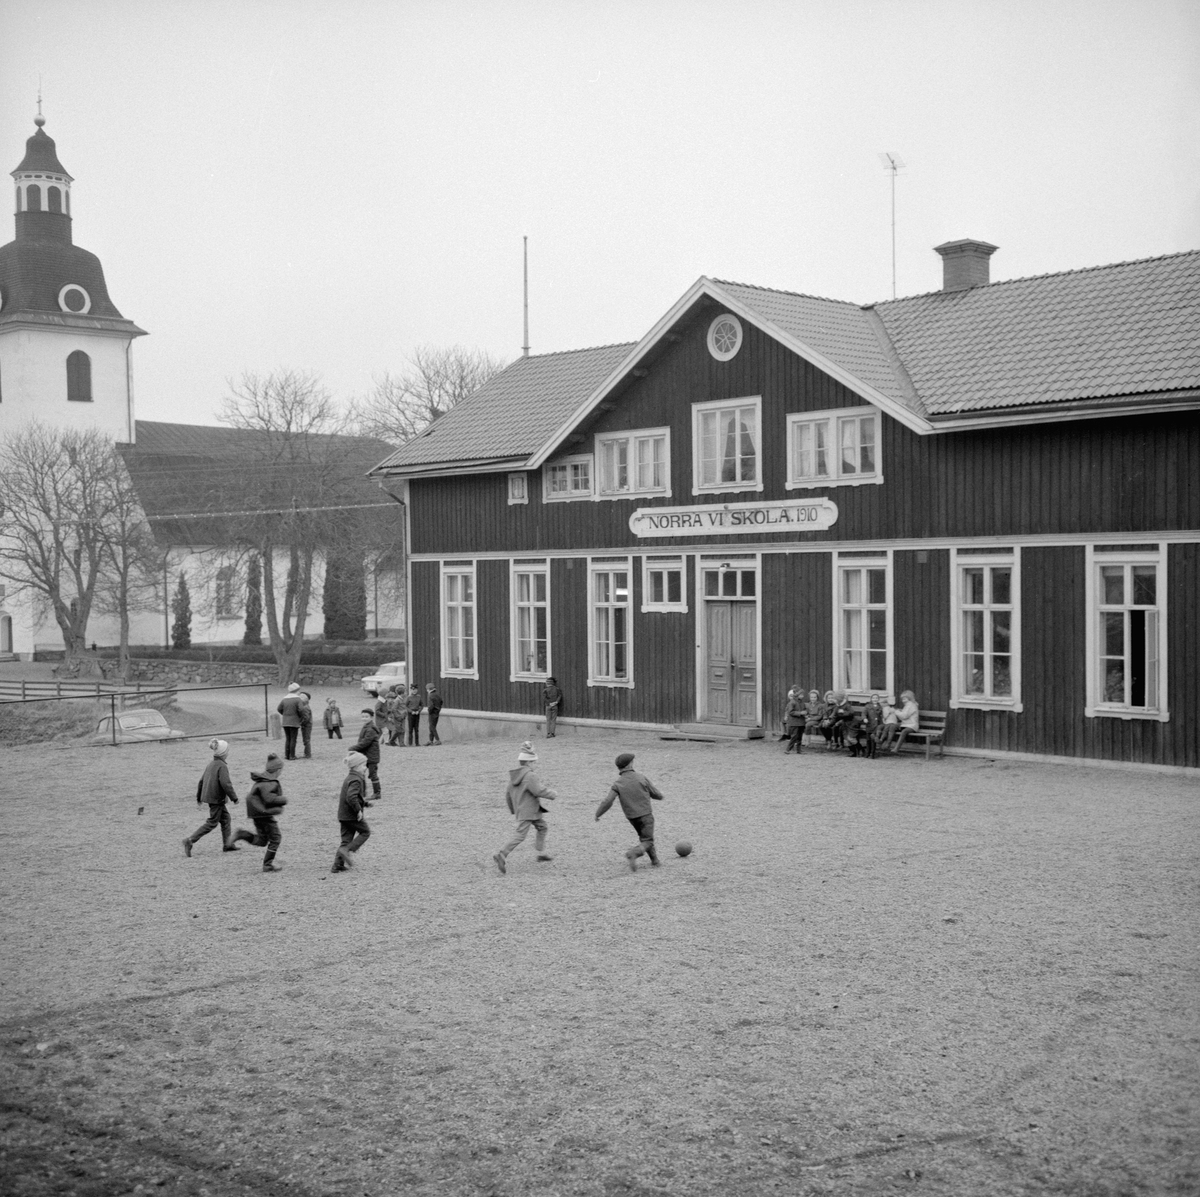 Året är 1964 och i sinom tid kommer det att vara slutlekt på skolgården till Norra Vi kyrkskola. Efter skolans nedläggning 1967 fick byggnaden ny funktion som församlingshem.